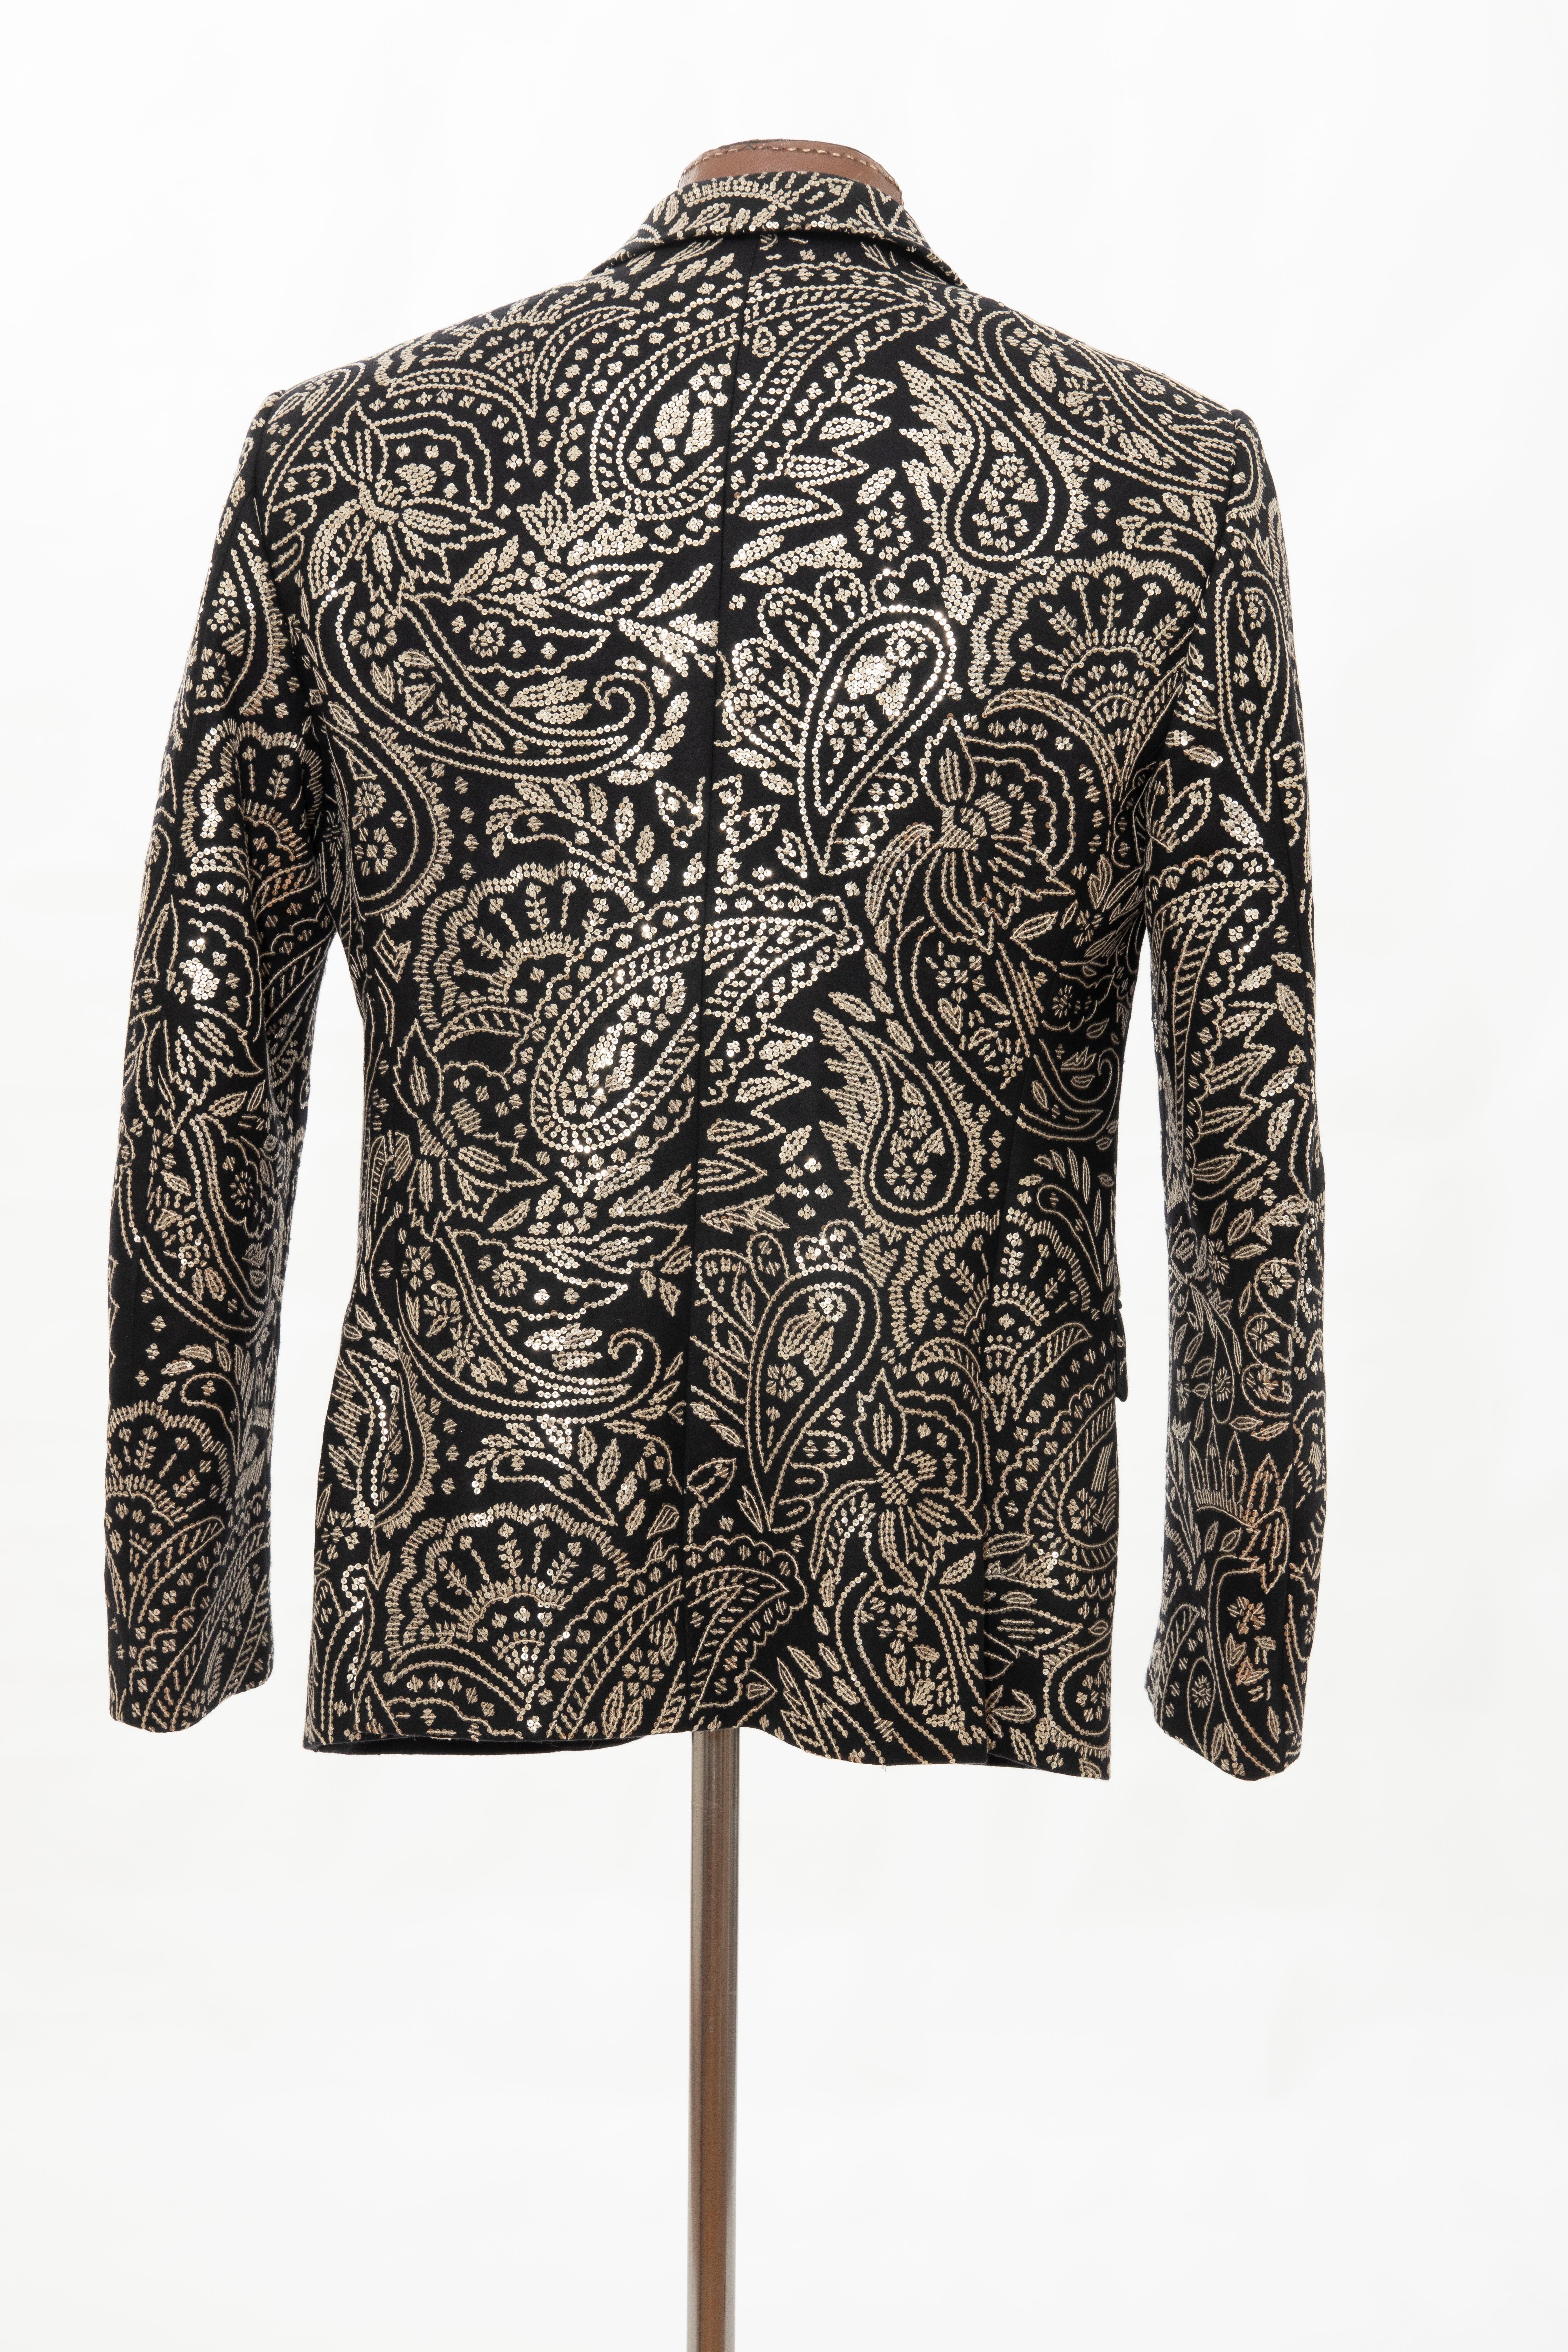 Alexander McQueen Men's Runway Black Wool Embroidered Sequin Blazer, Fall 2016 2